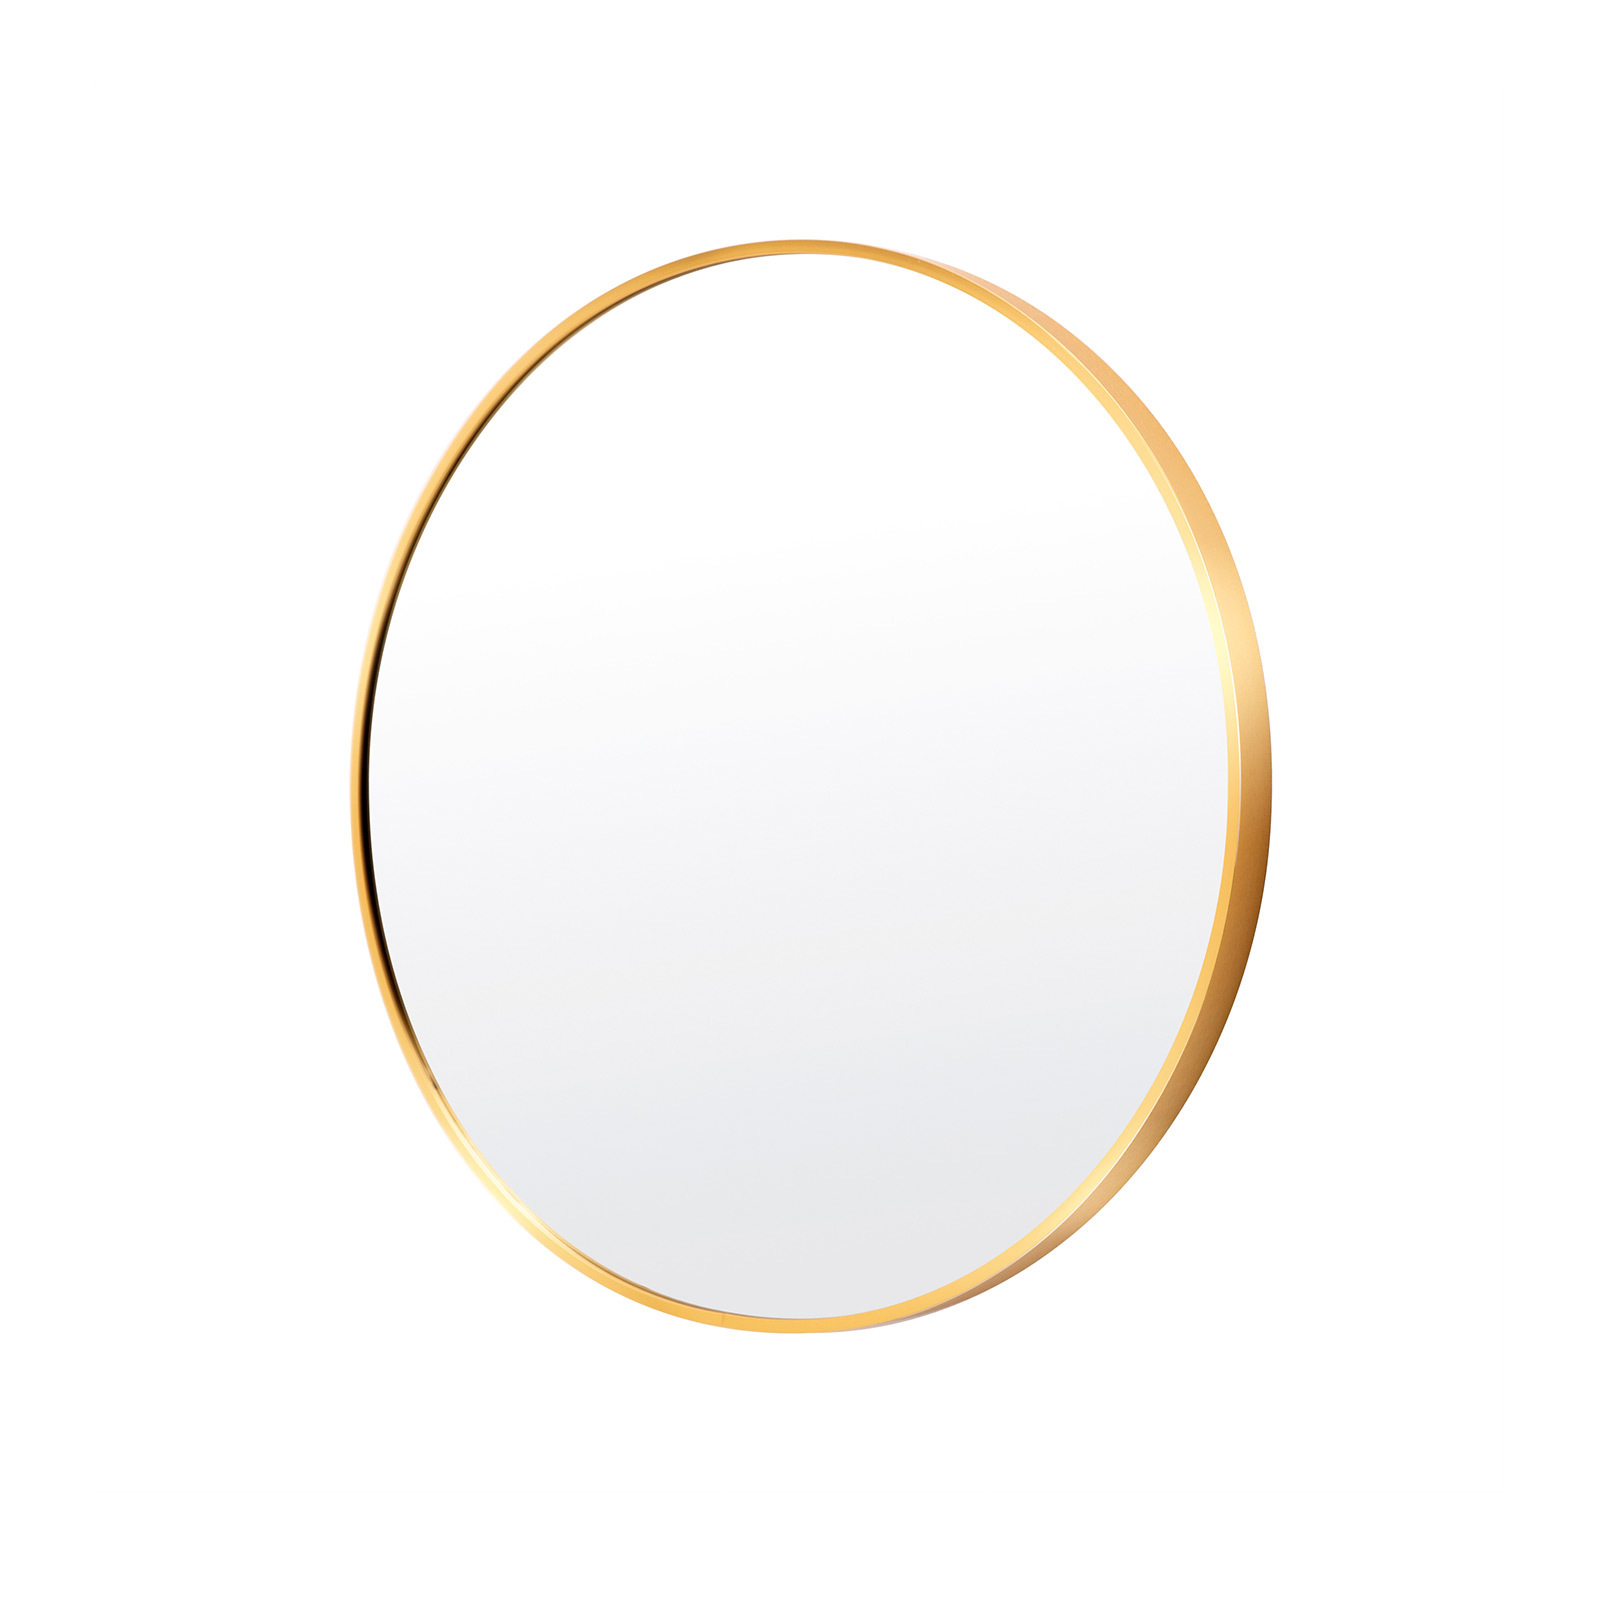 60cm Wall Mirror Round Bathroom - GOLD